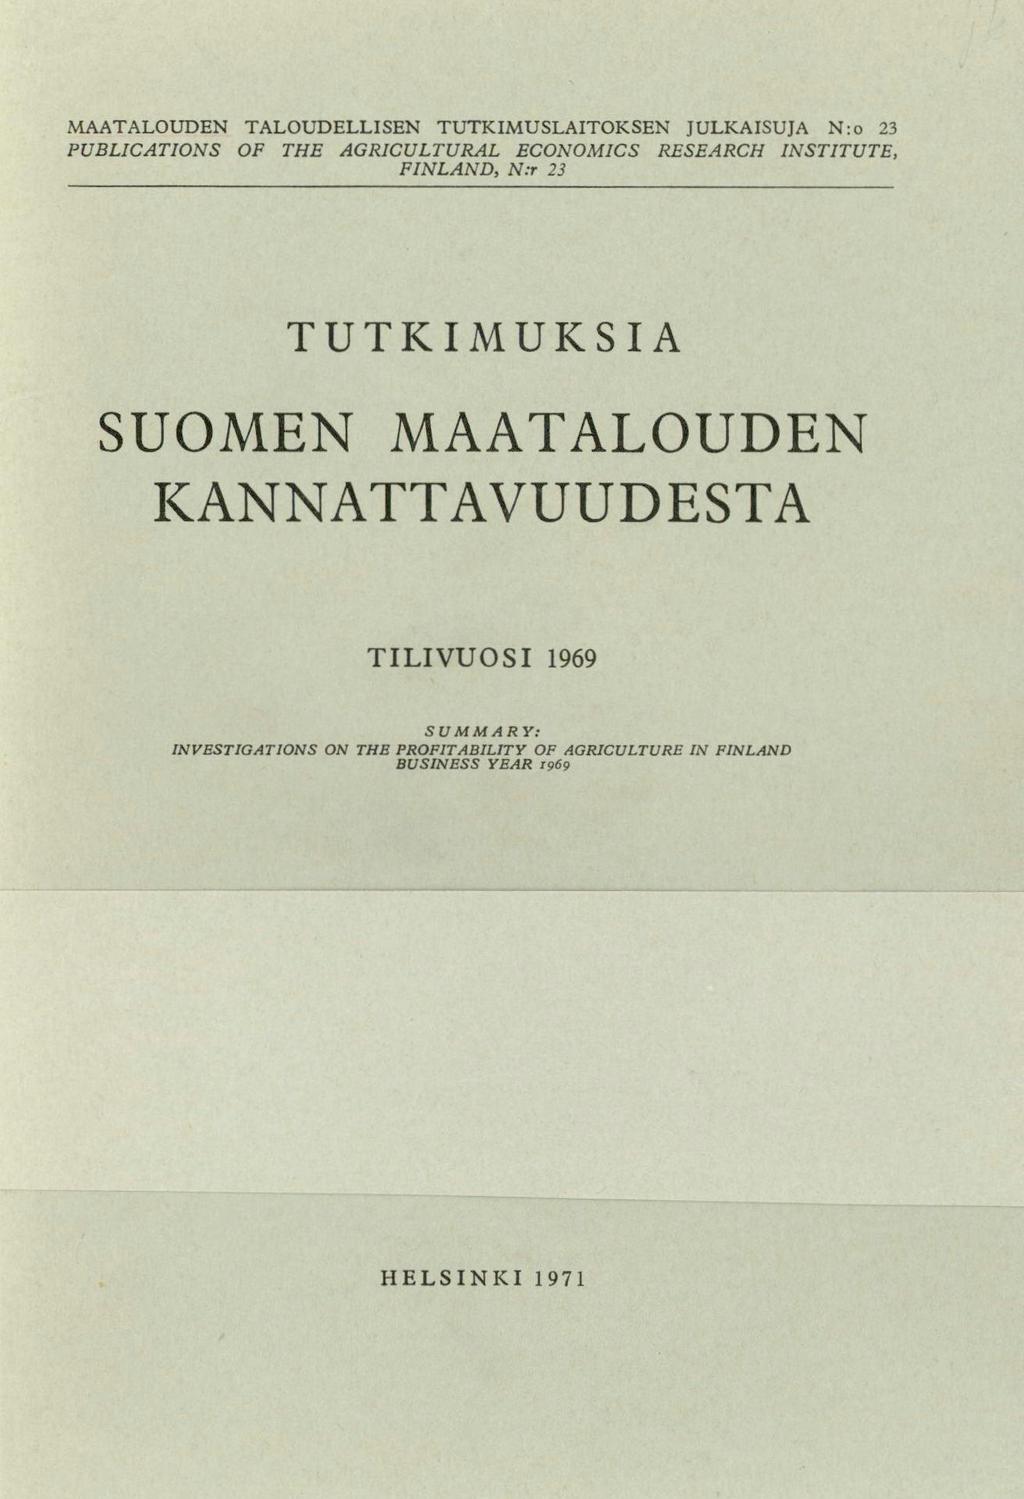 MAATALOUDEN TALOUDELLISEN TUTKIMUSLAITOKSEN JULKAISUJA N:o 23 PUBLICATIONS OF THE AGRICULTURAL ECONOMICS RESEARCH INSTITUTE, FINLAND, N3 23 TUTKIMUKSIA